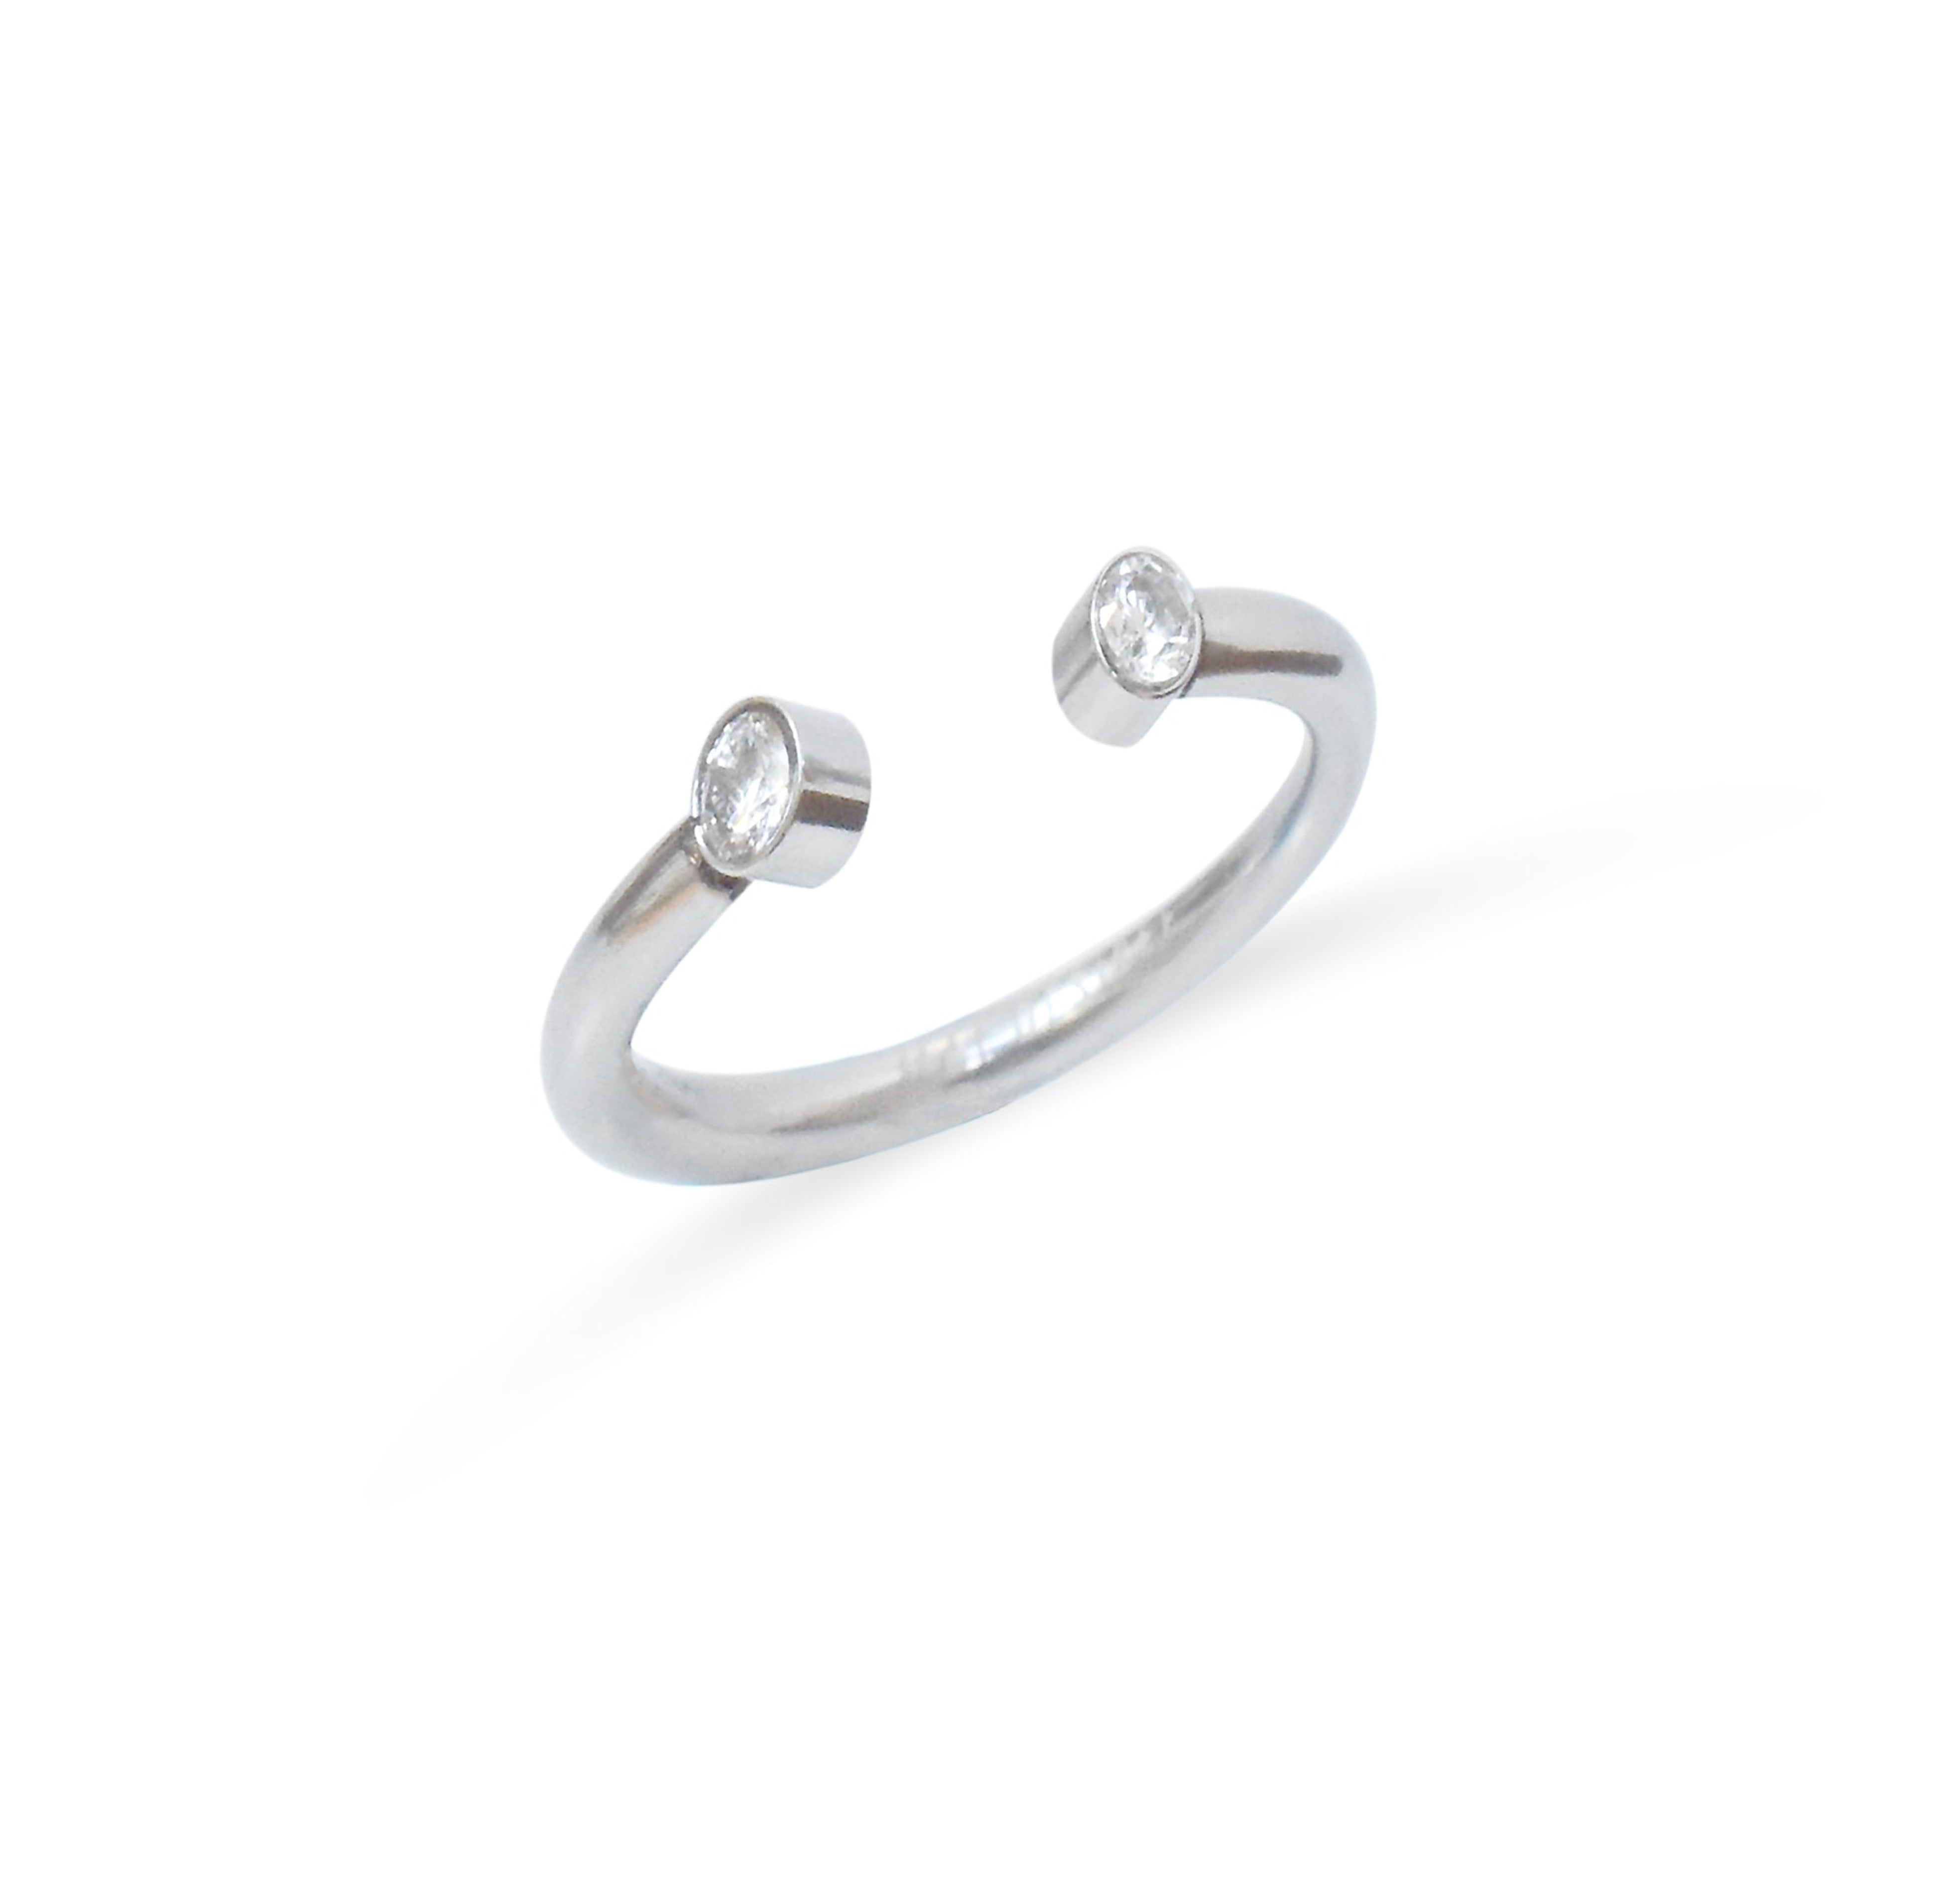 Jolie dainty silver open ring. Waterproof jewelry